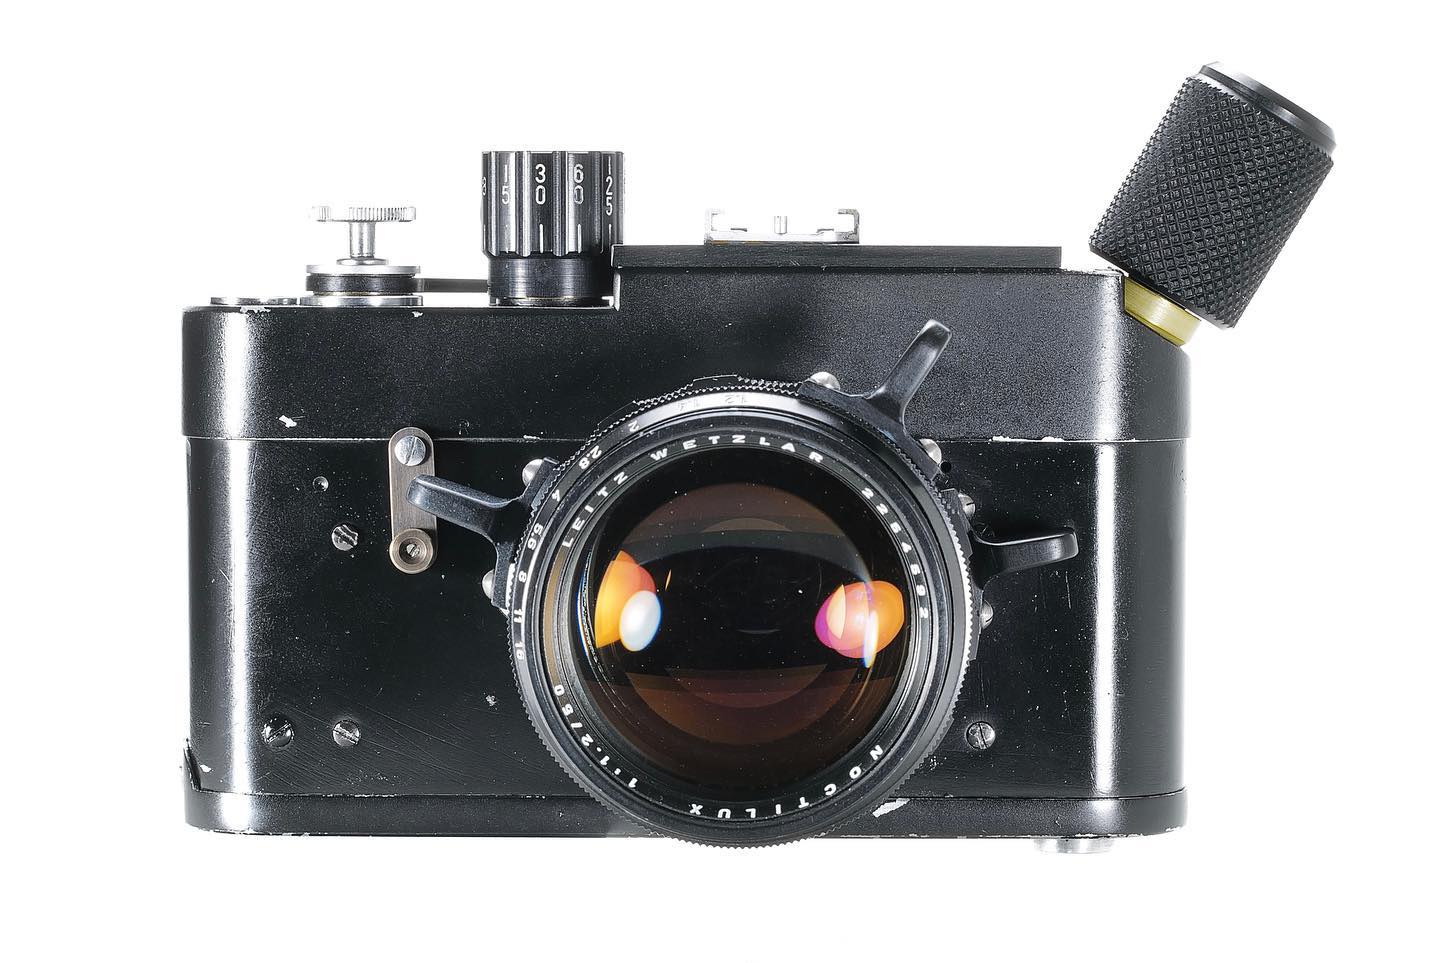 Leica MDa NASA replica camera with Noctilux 50mm f/1.2 lens 